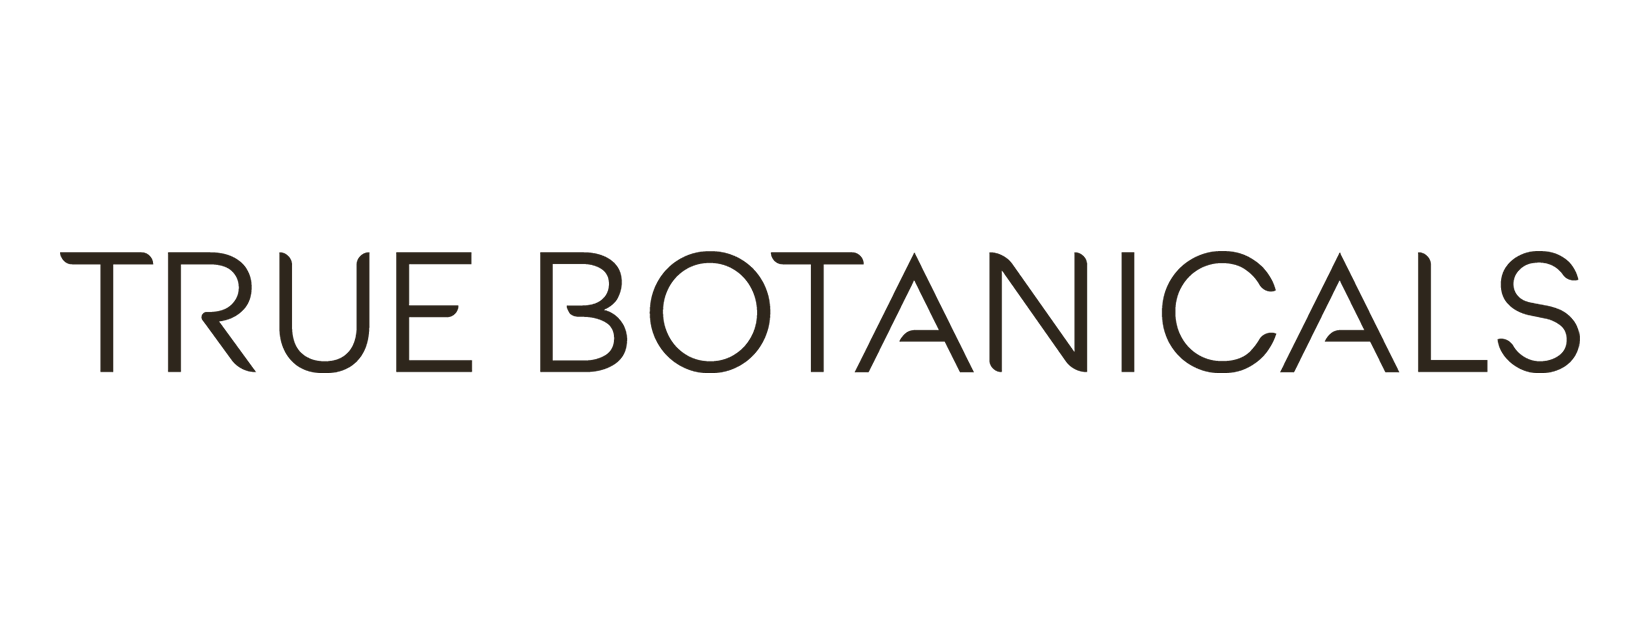 True Botanicals logo